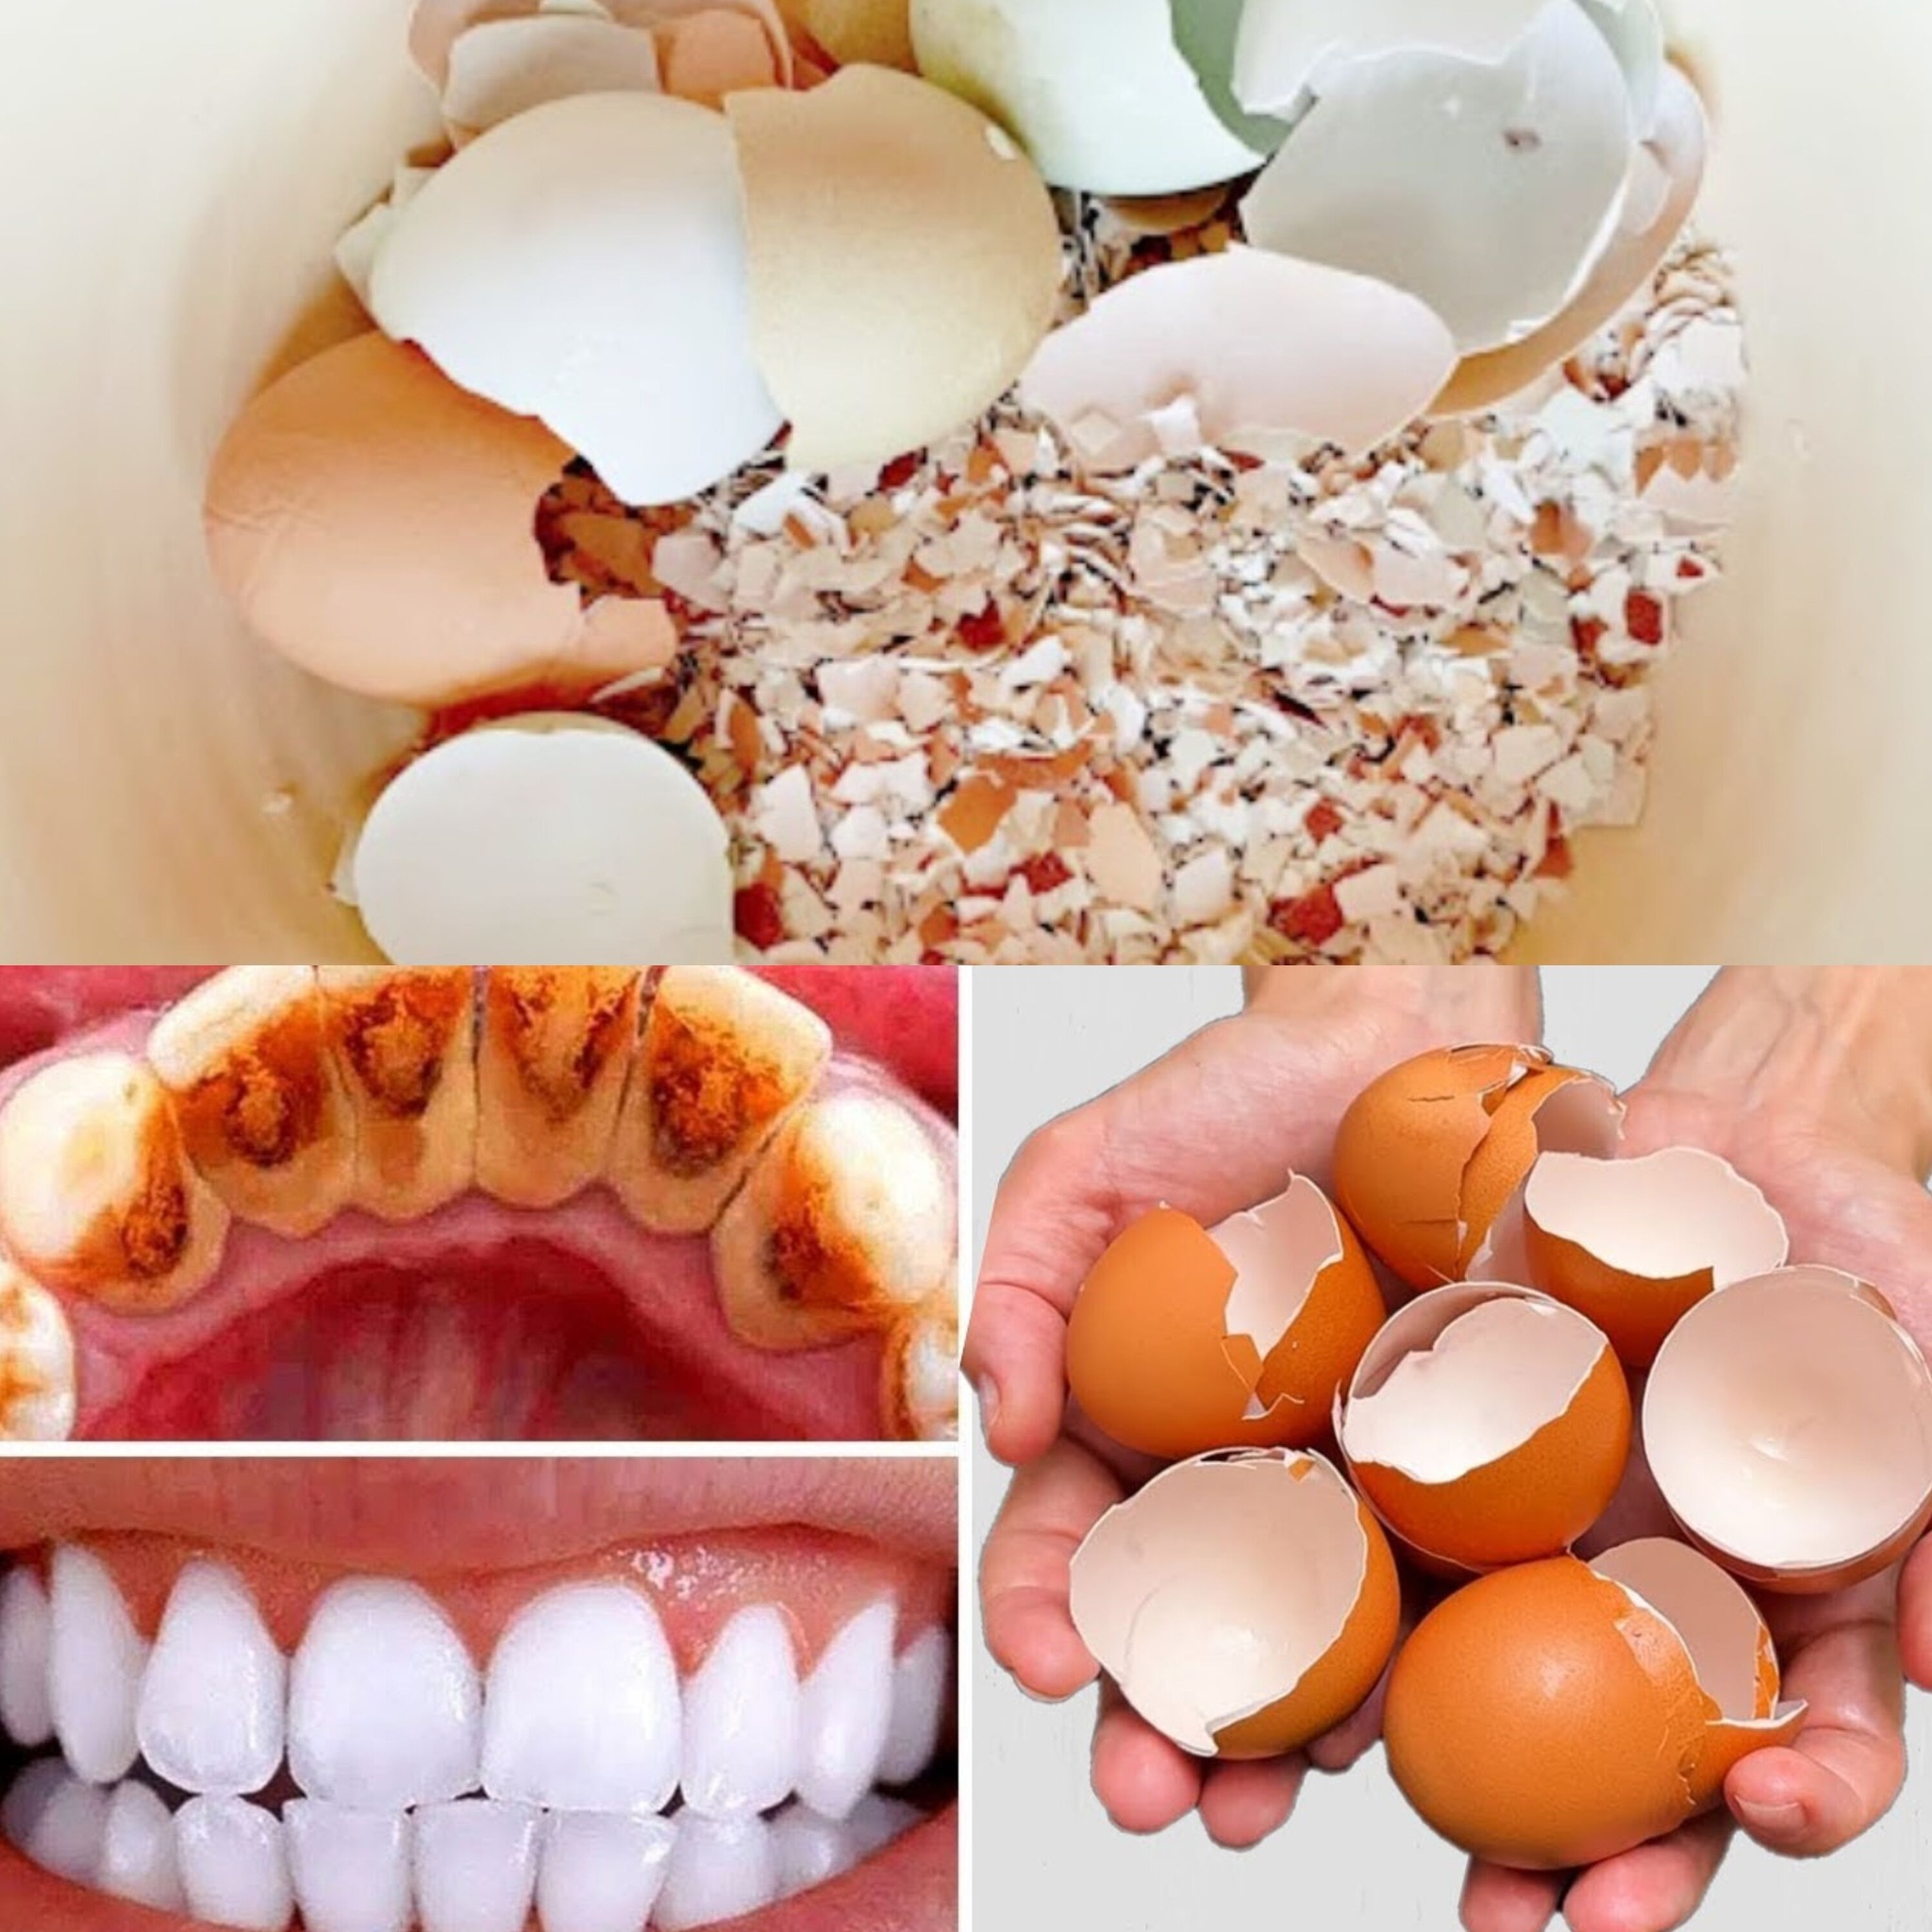 egg shell teeth whitening